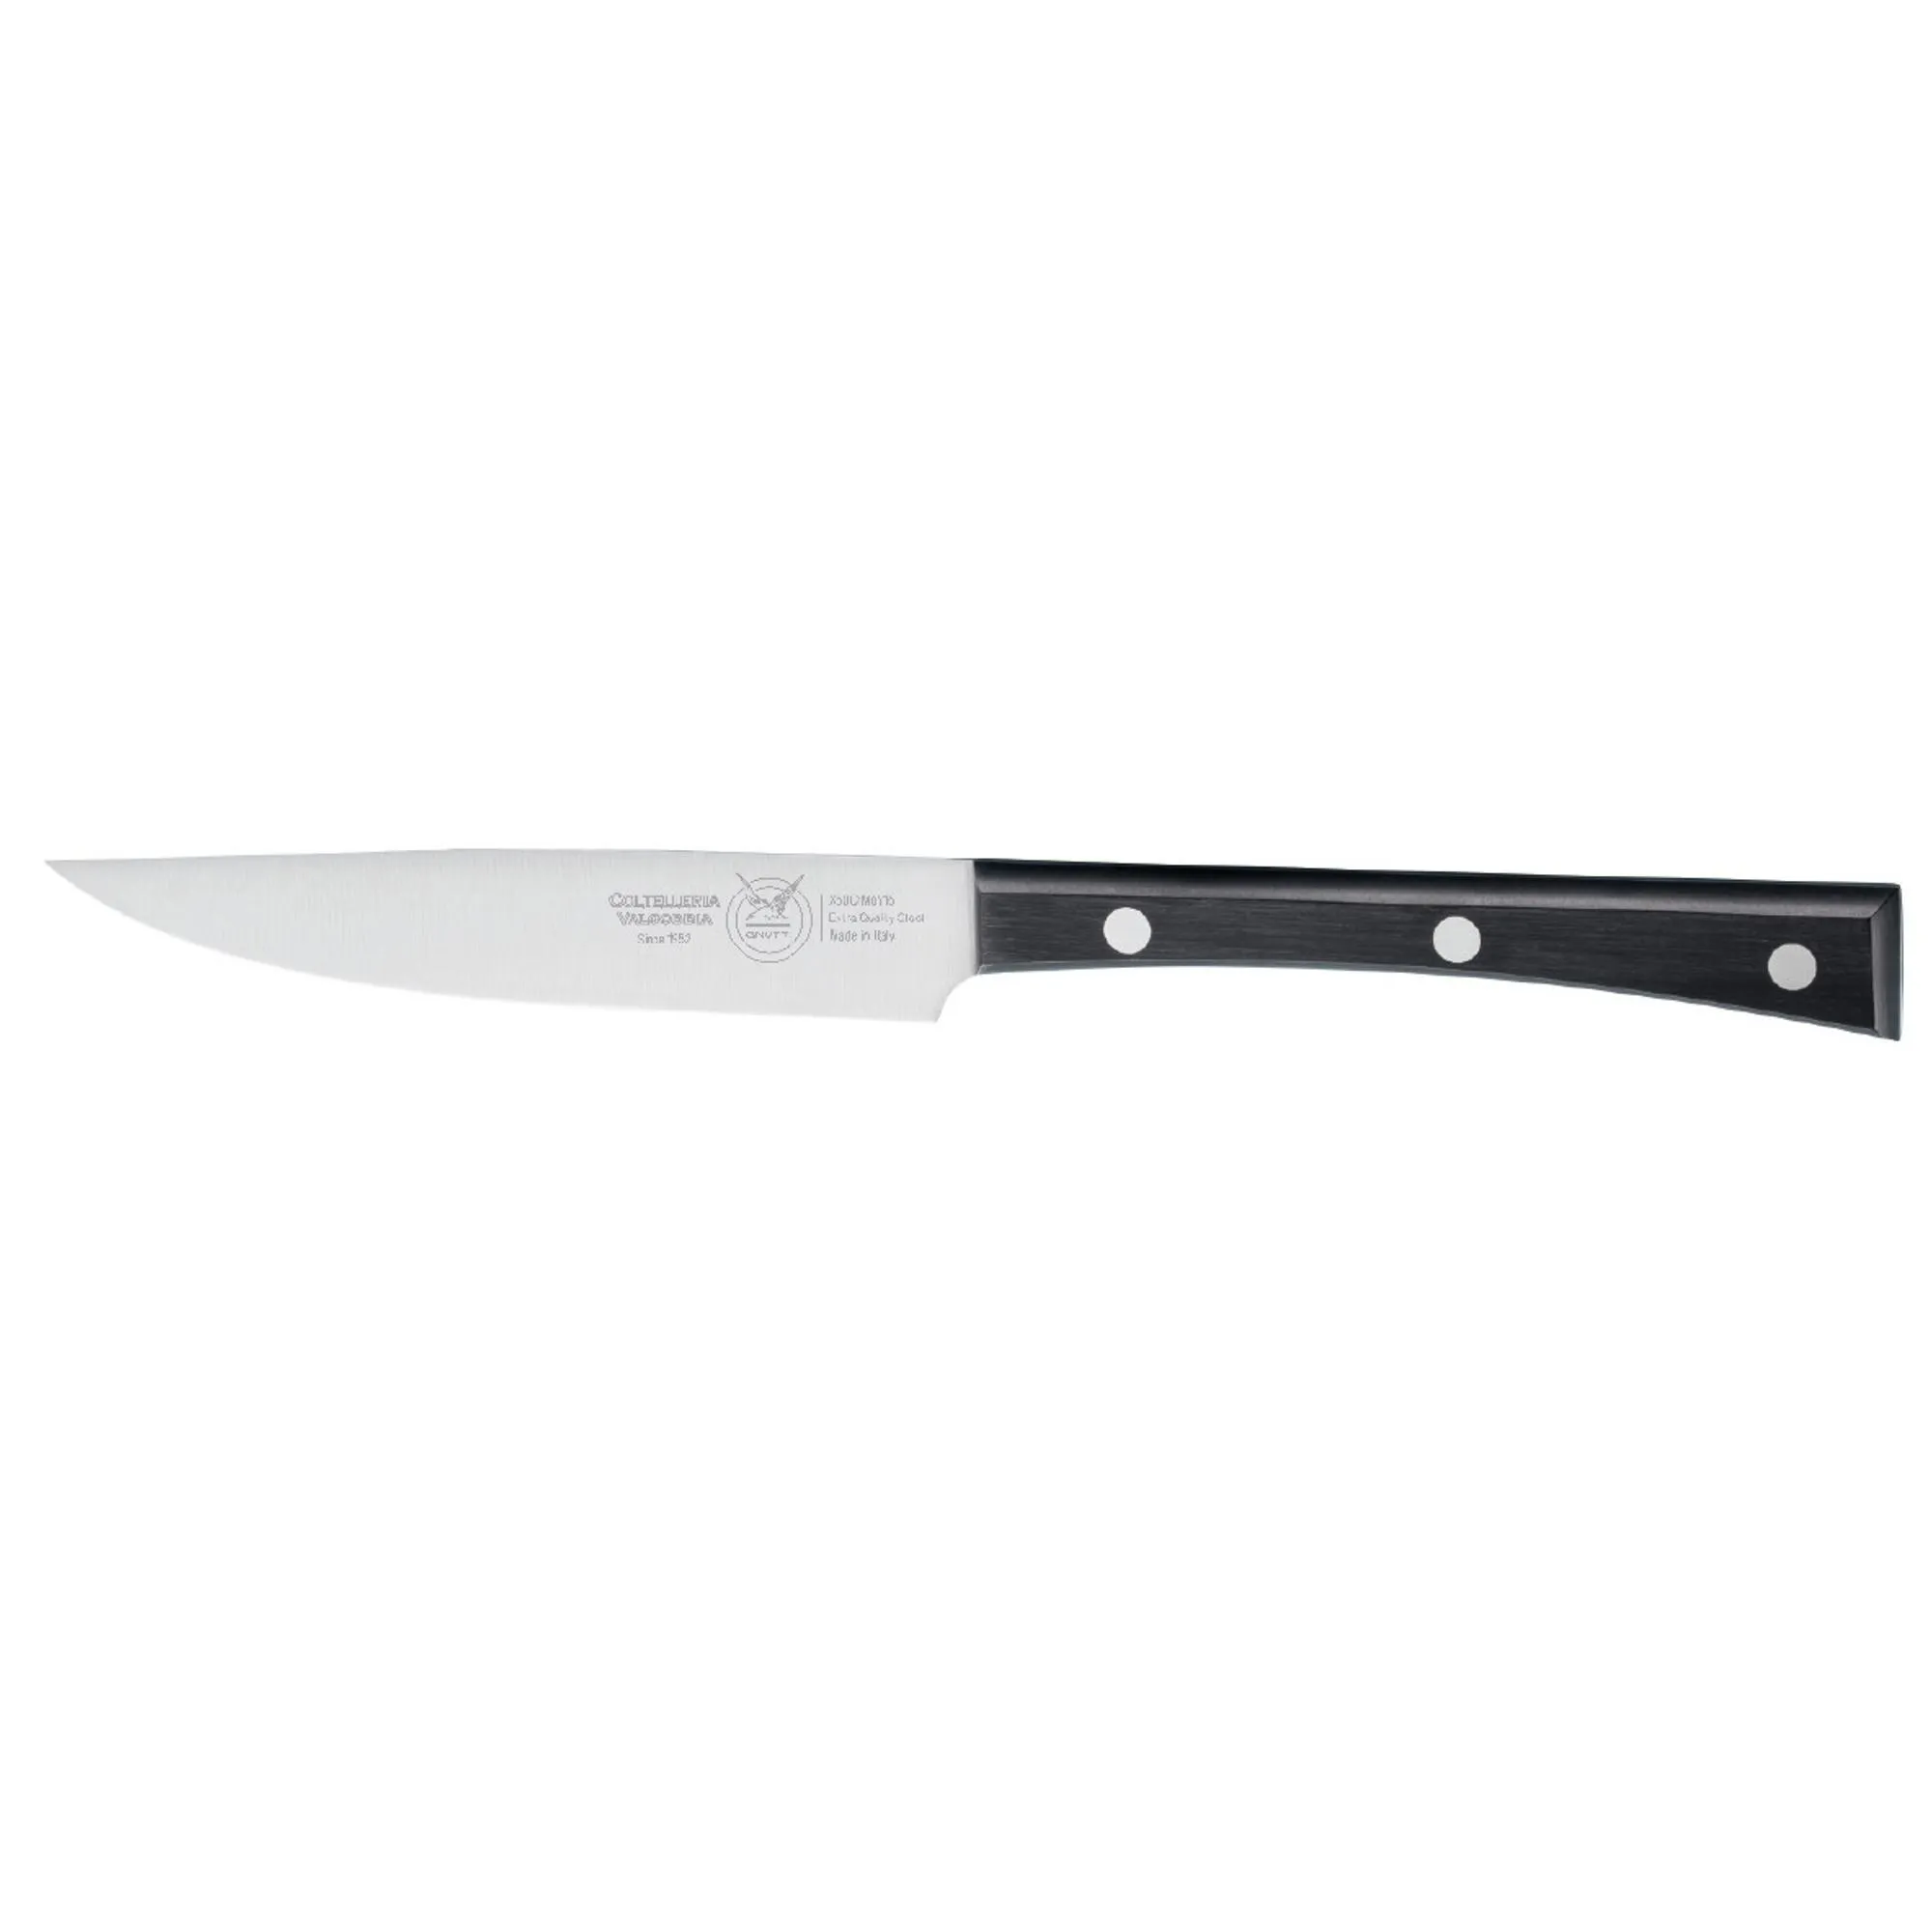 coltello bistecca stretto cm 13, colore nero, manico in resina acetalica nera